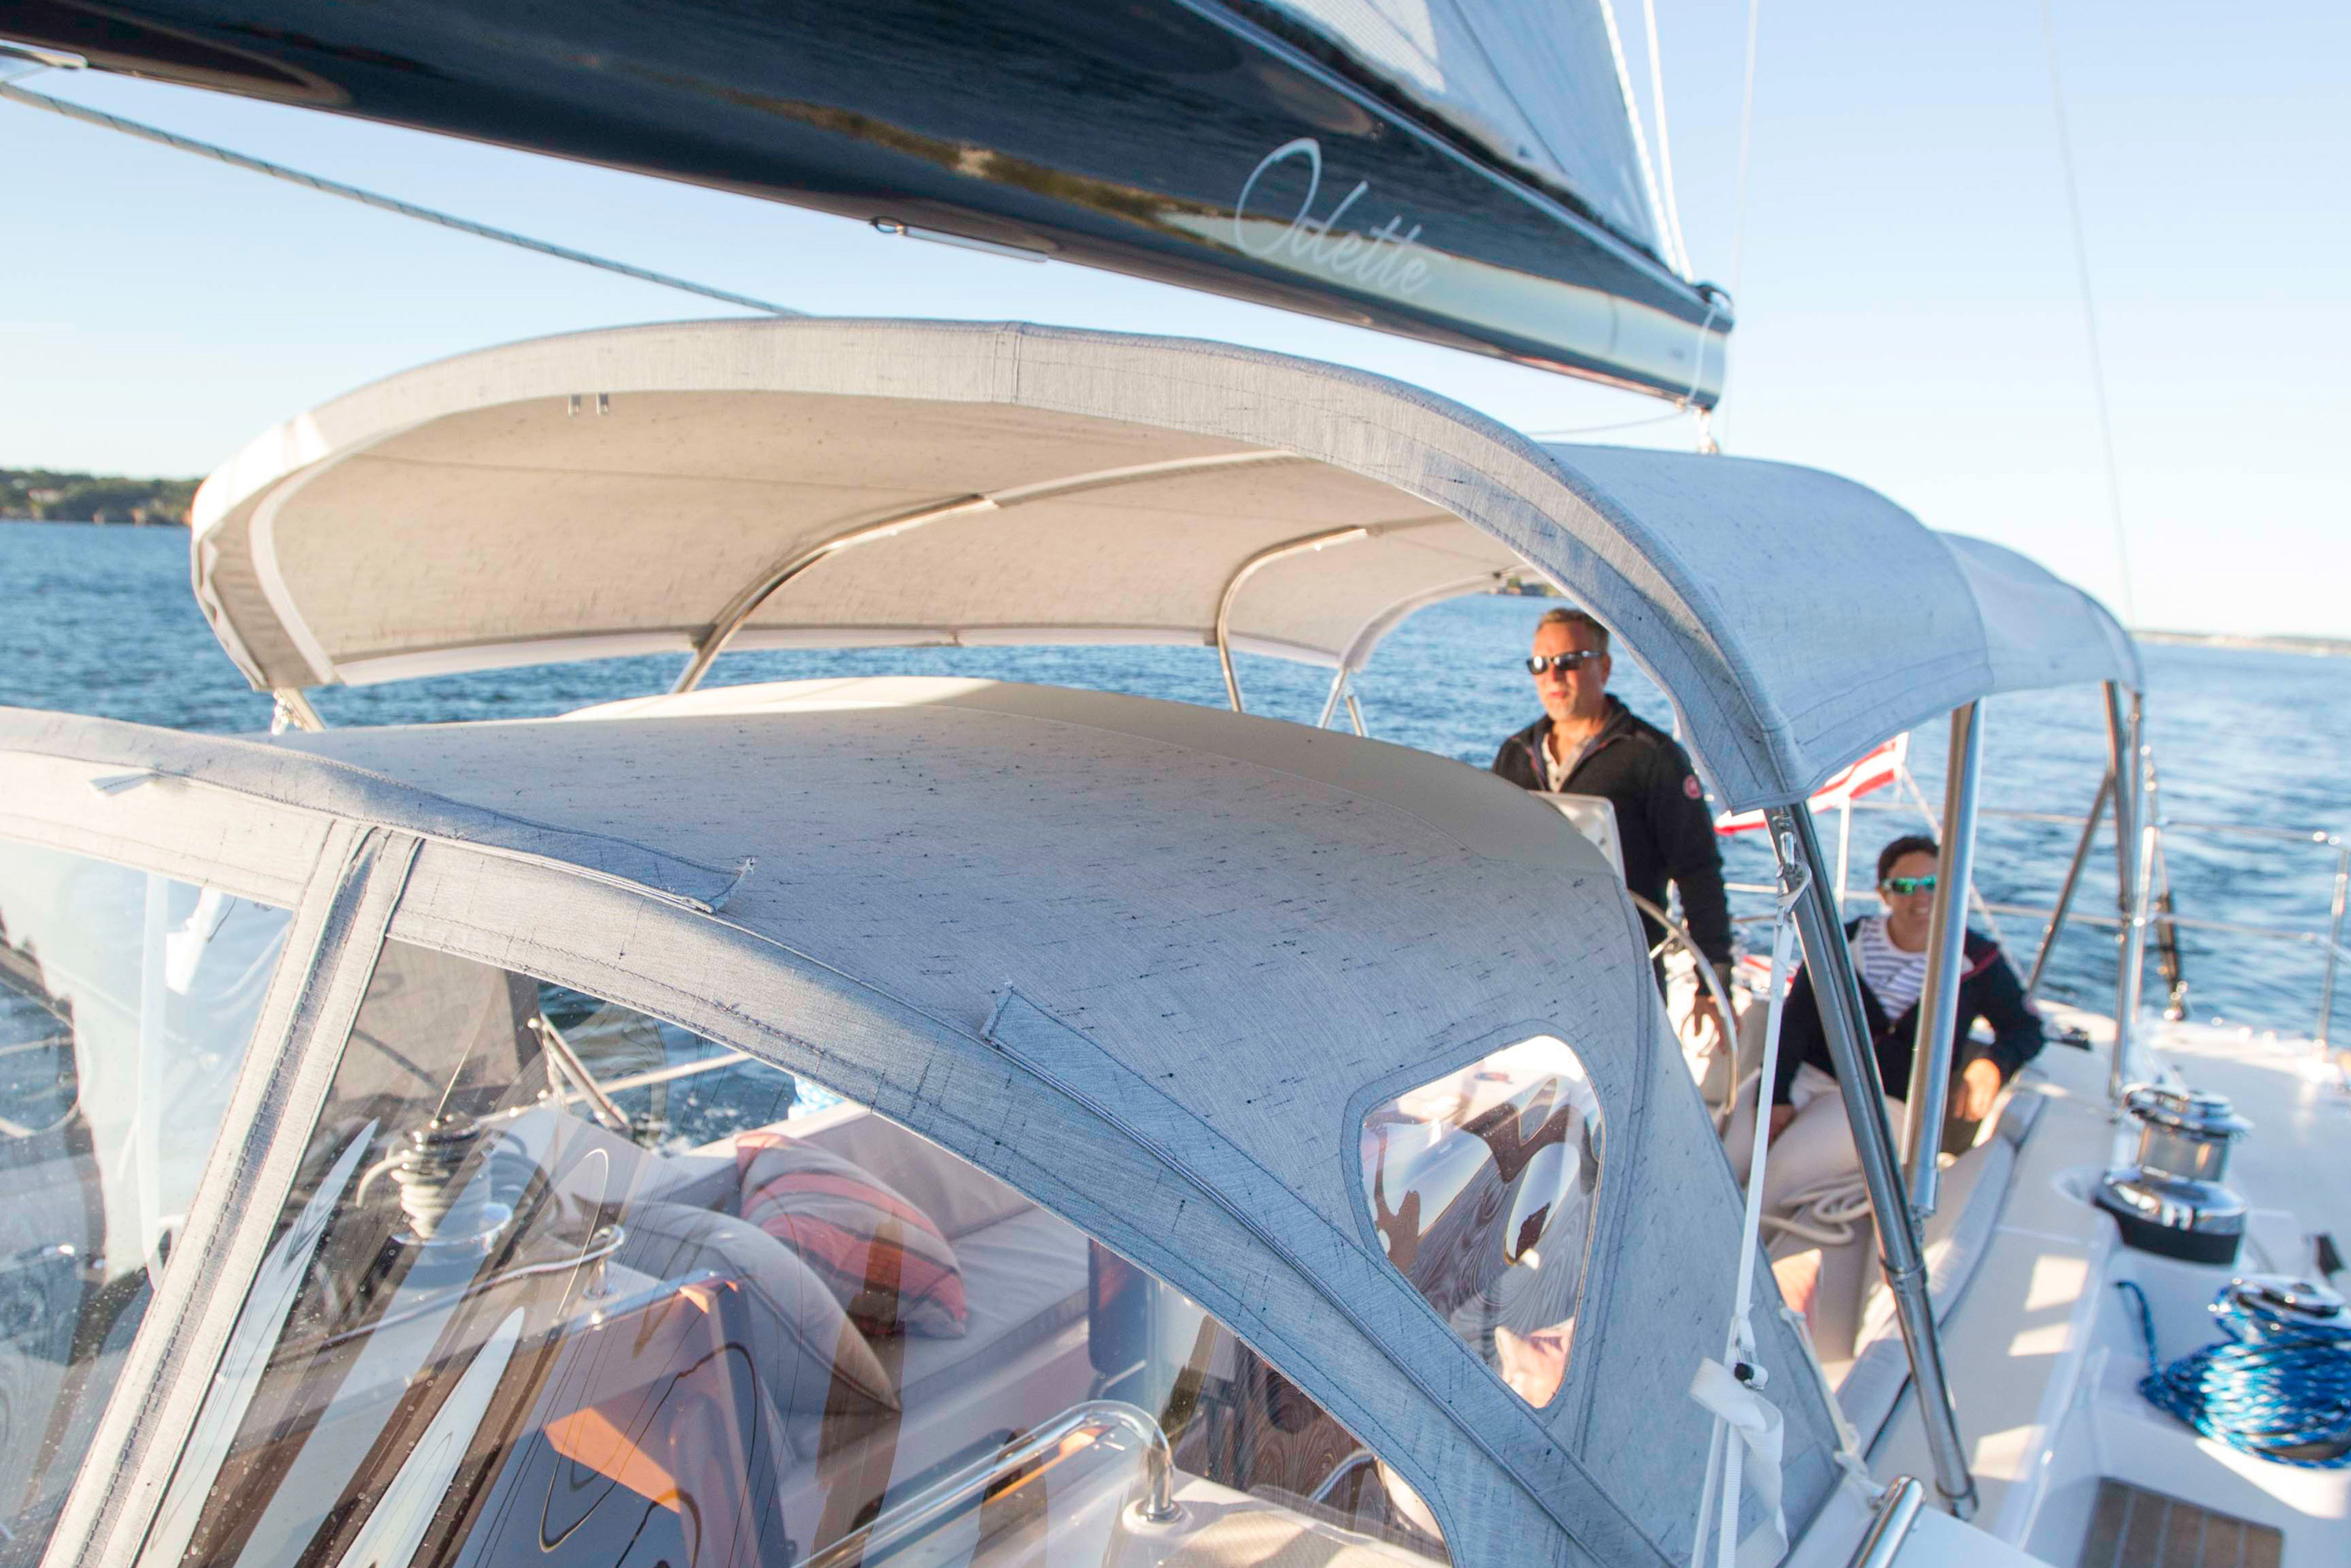 Pärchen auf einem Segelboot mit grauem Bimini und Sprayhood aus Sunbrella-Stoff